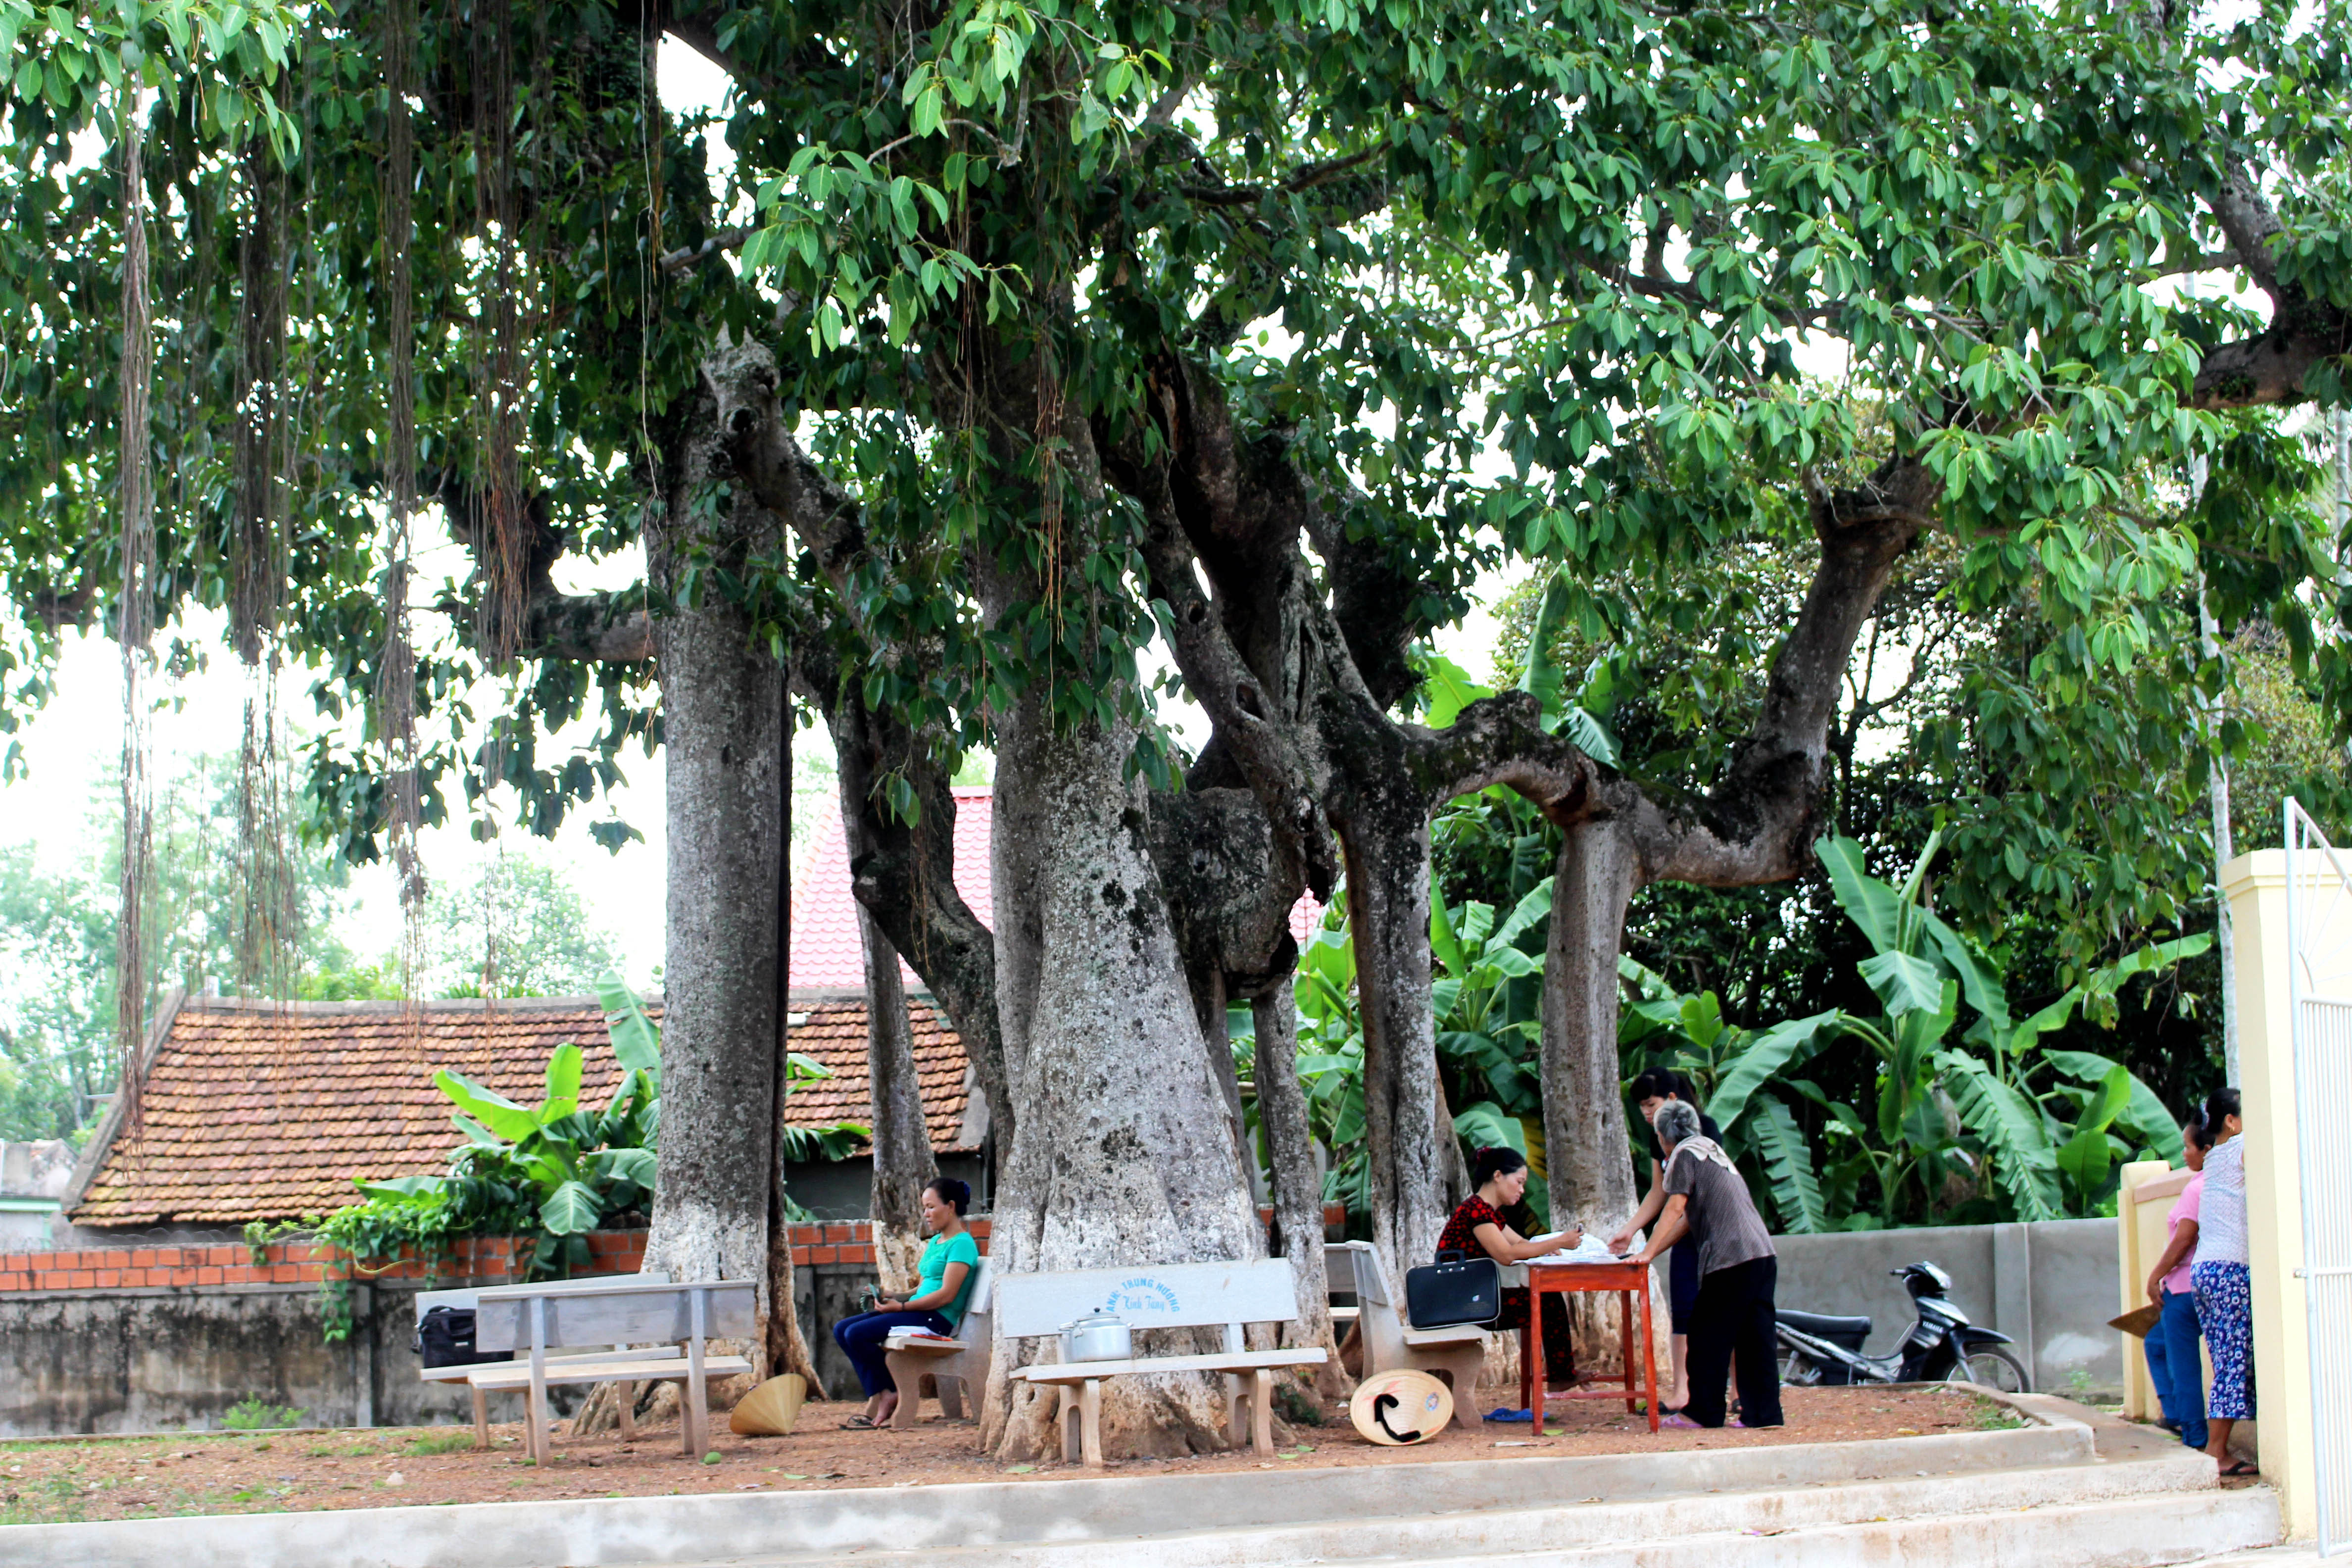 Theo gia phả của họ Nguyễn Quang – một dòng họ lớn trong làng, thì cây đa Mỹ Thịnh xóm Hòa Phú, xã Hiến Sơn huyện Đô Lương  có từ thế kỷ XVI, tính đến nay đã hơn 500 năm. Hiện cây đa vẫn còn xanh tốt, tọa lạc ở ngả ba làng. 